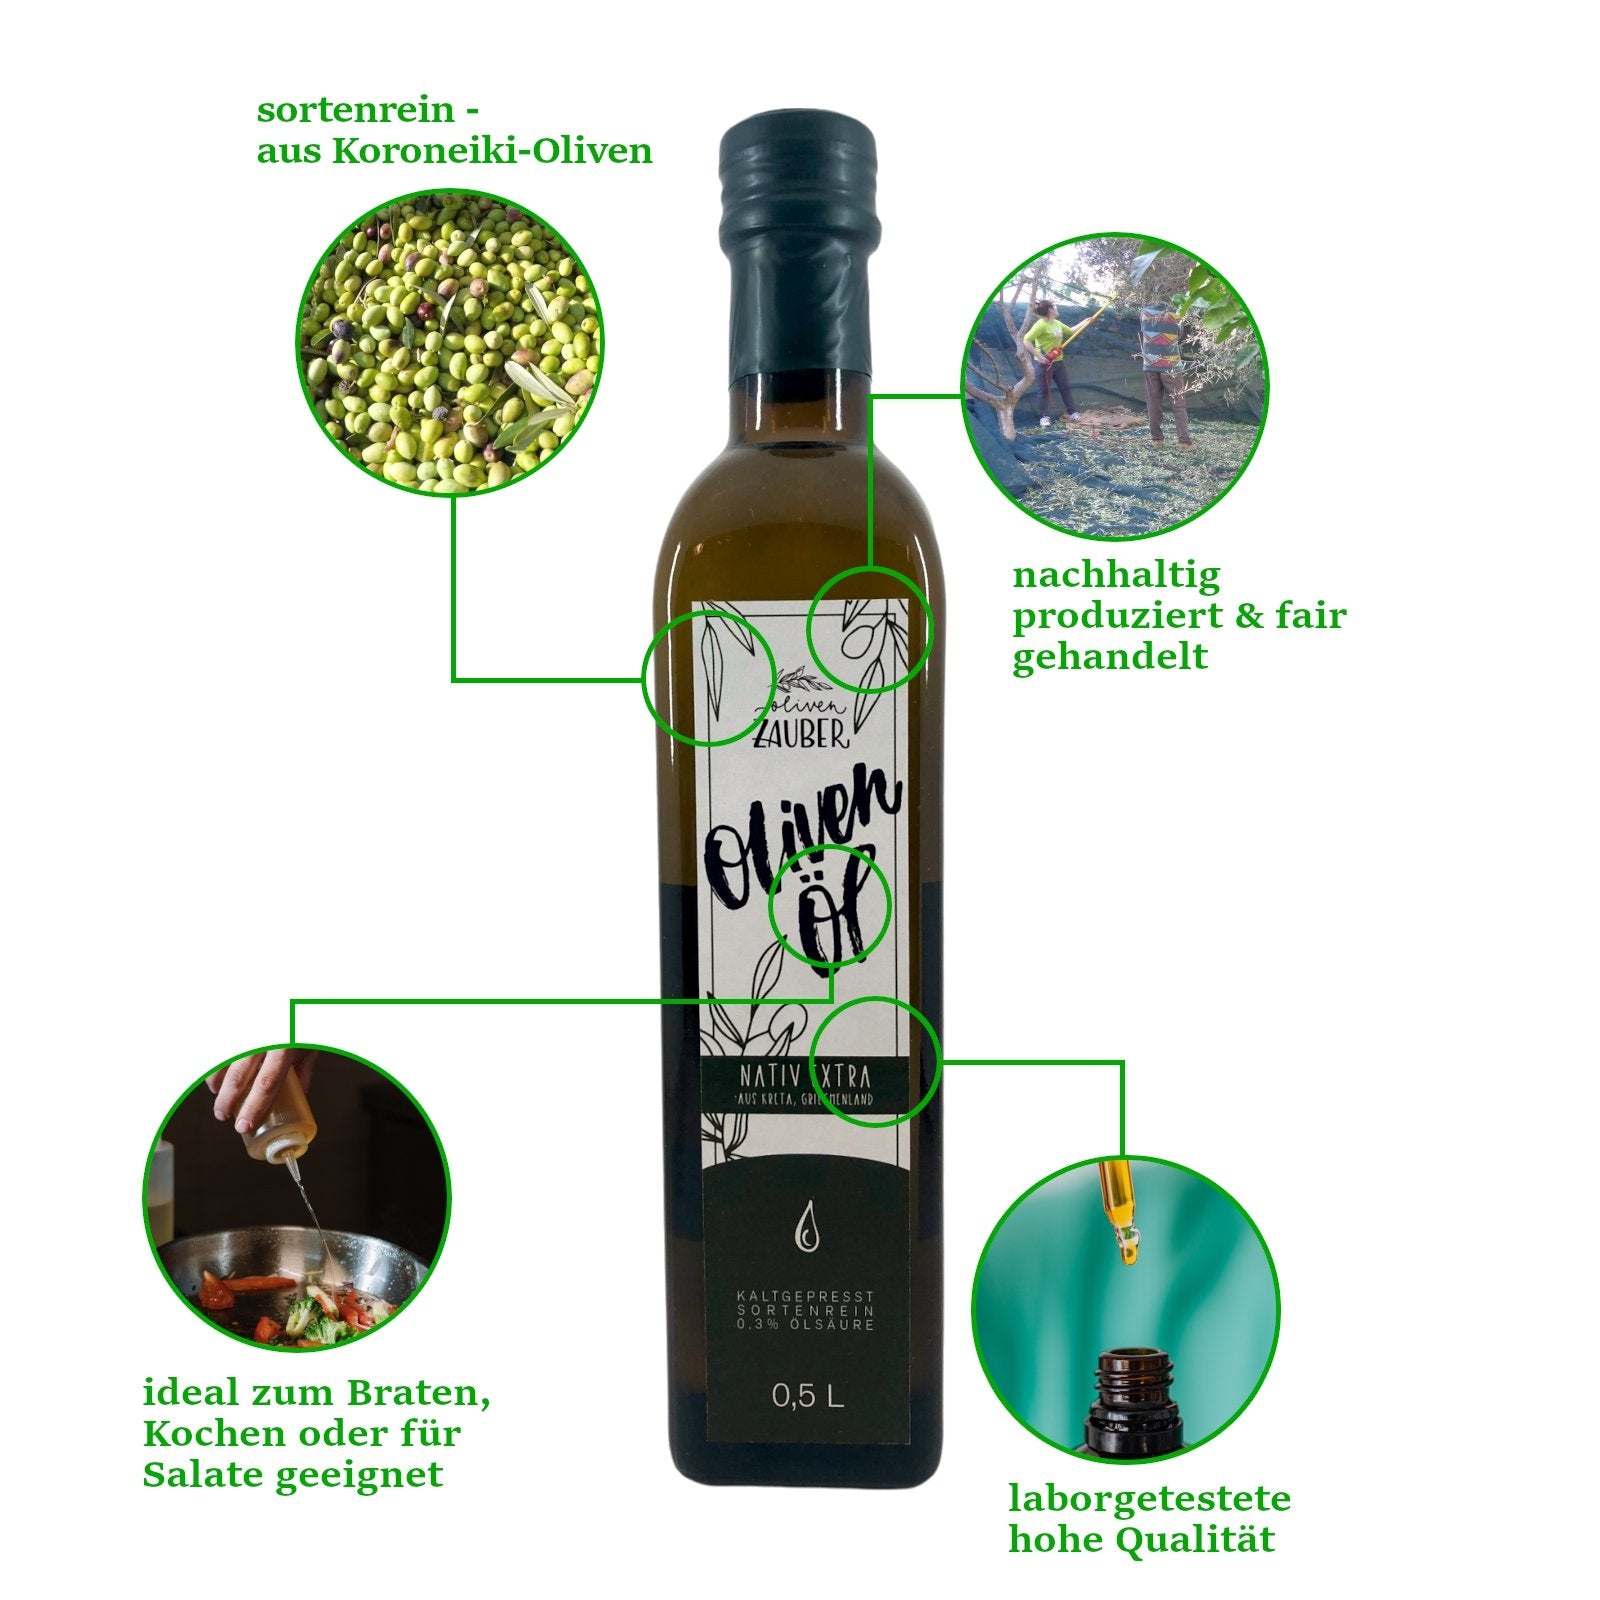 Griechisches Olivenöl nativ extra aus Kreta – 500ml Flasche - OlivenZauber - Olivenöl neu erleben